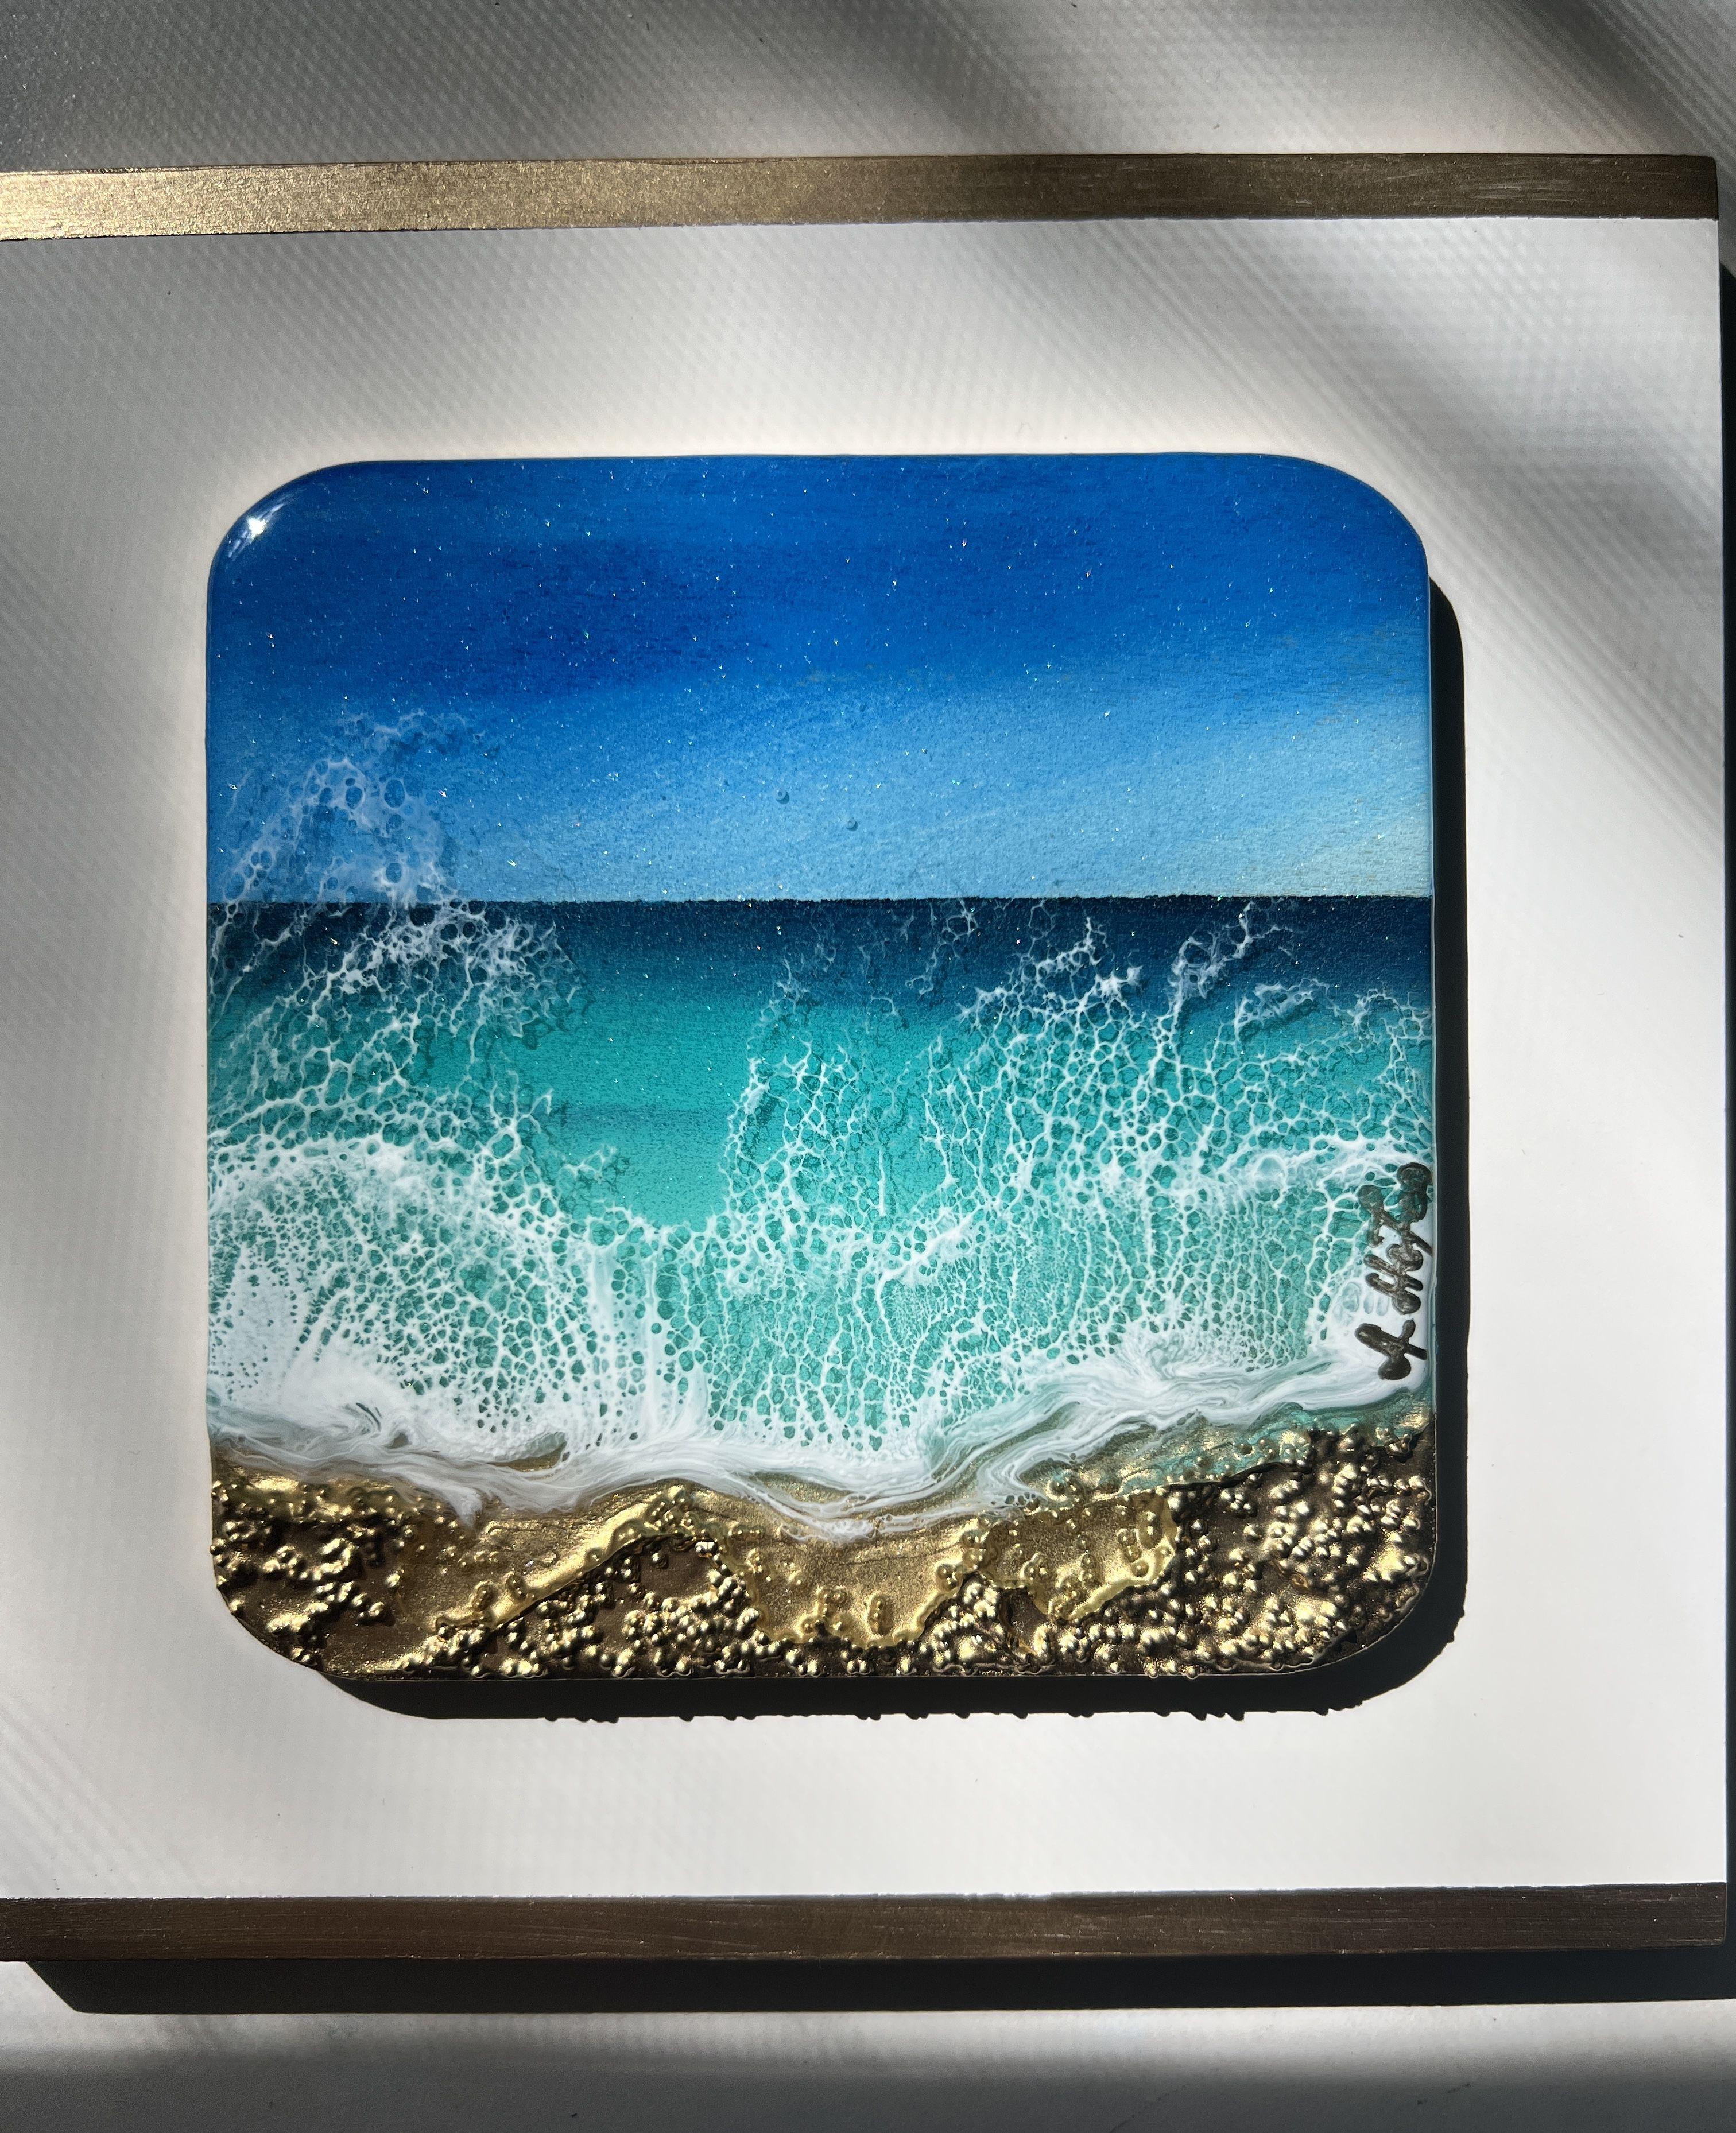 Miniatur-Ozeanbild rund     Inspiriert von den Meeresfarben der Turks- und Caicosinseln  Verschiedene Blautöne, Türkis, Petrol, Aqua, Gold und Weiß  Dieses Gemälde muss nicht gerahmt werden, das gemalte Bild erstreckt sich über die Seiten, es ist